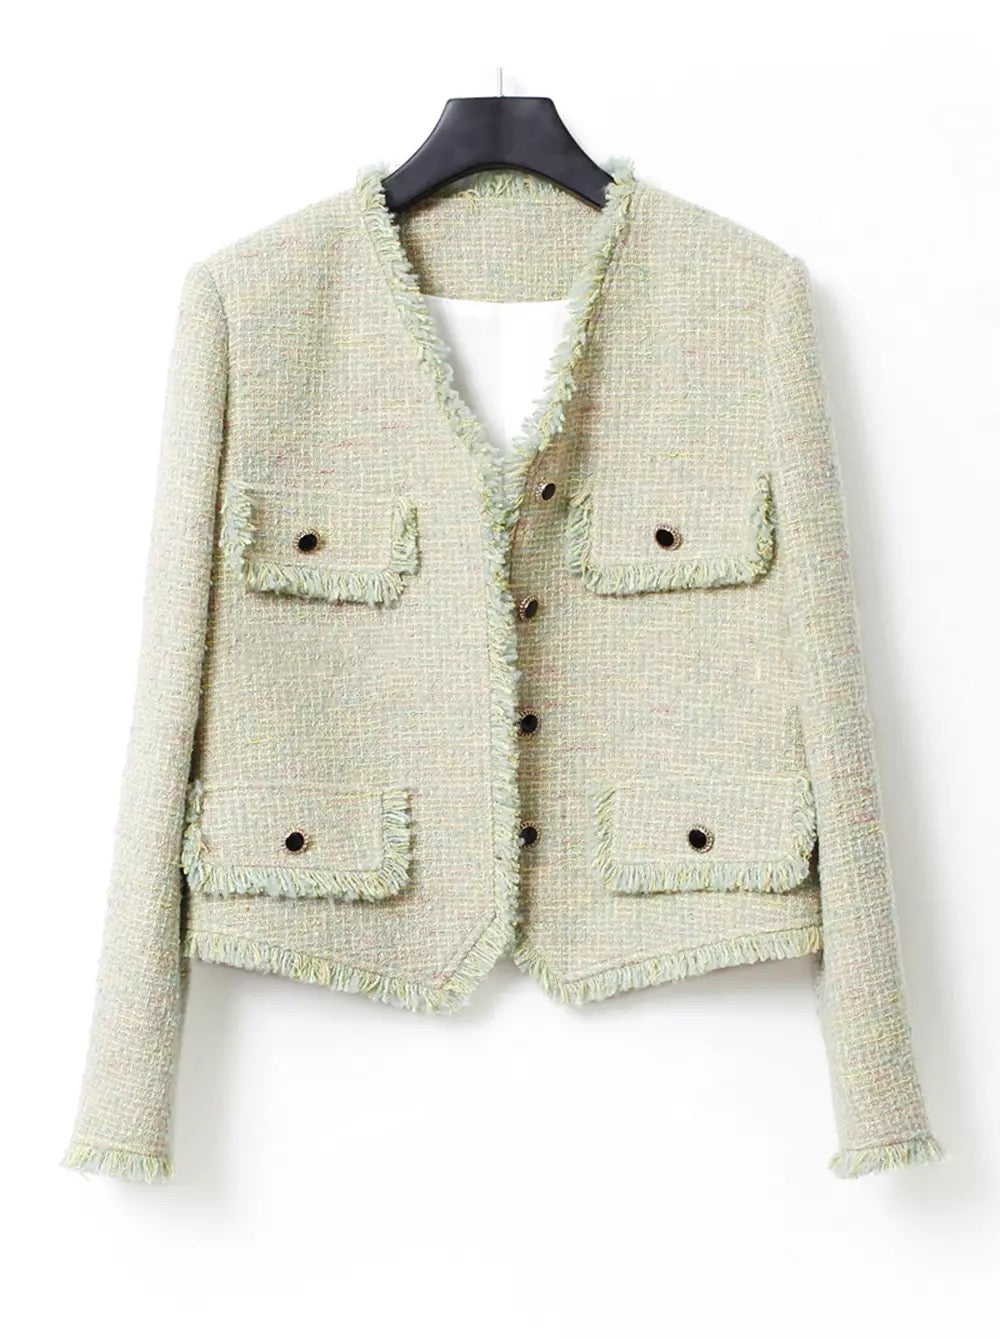 Cara tweed jacket